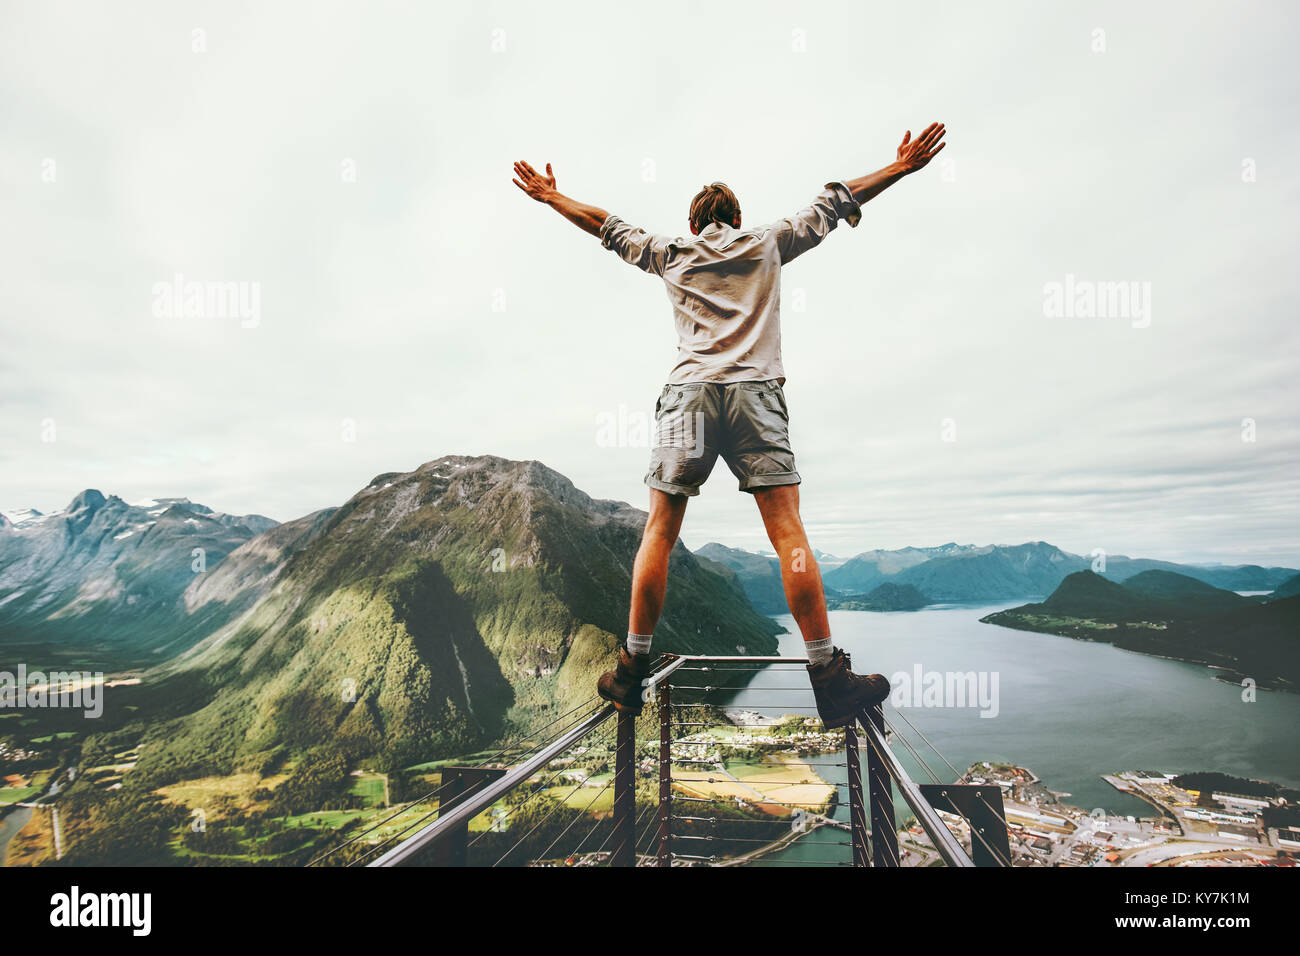 Les mains de l'homme soulevées au bord cliff Rampestreken monument en Norvège Voyage montagne concept active risque de vie heureux Vacances en tourisme Banque D'Images